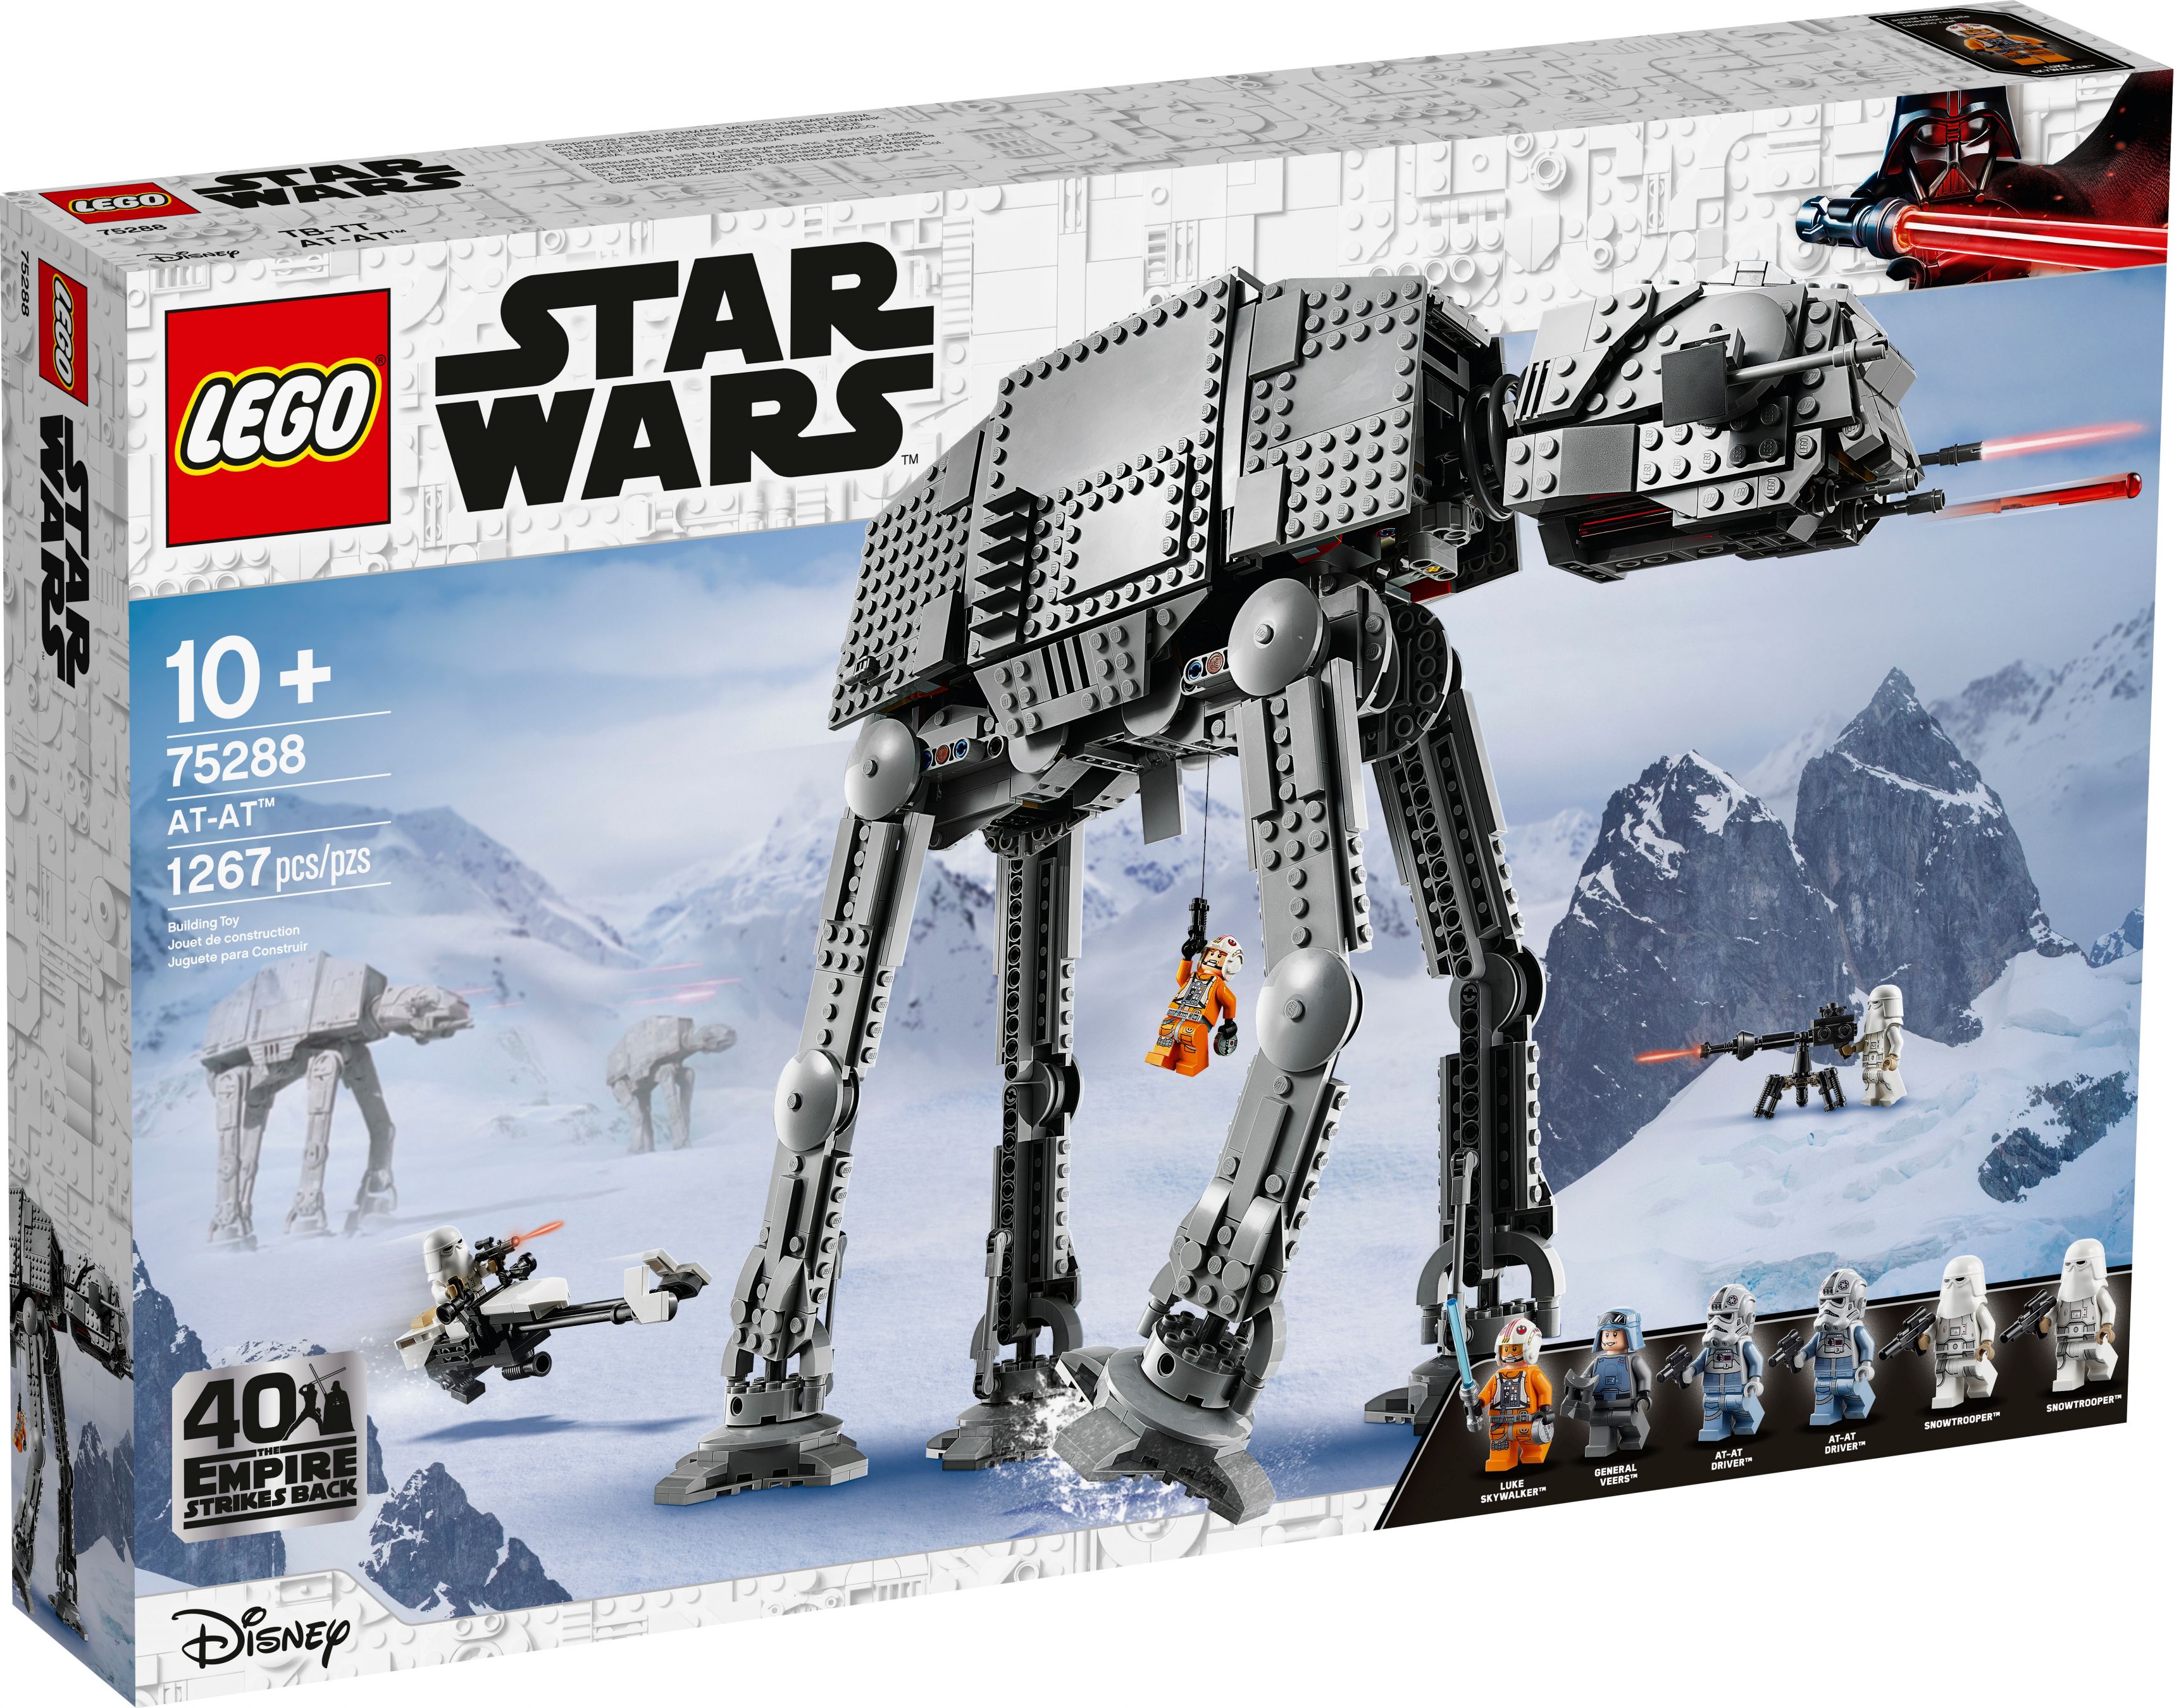 LEGO Star Wars 75288 AT-AT LEGO_75288_alt1.jpg